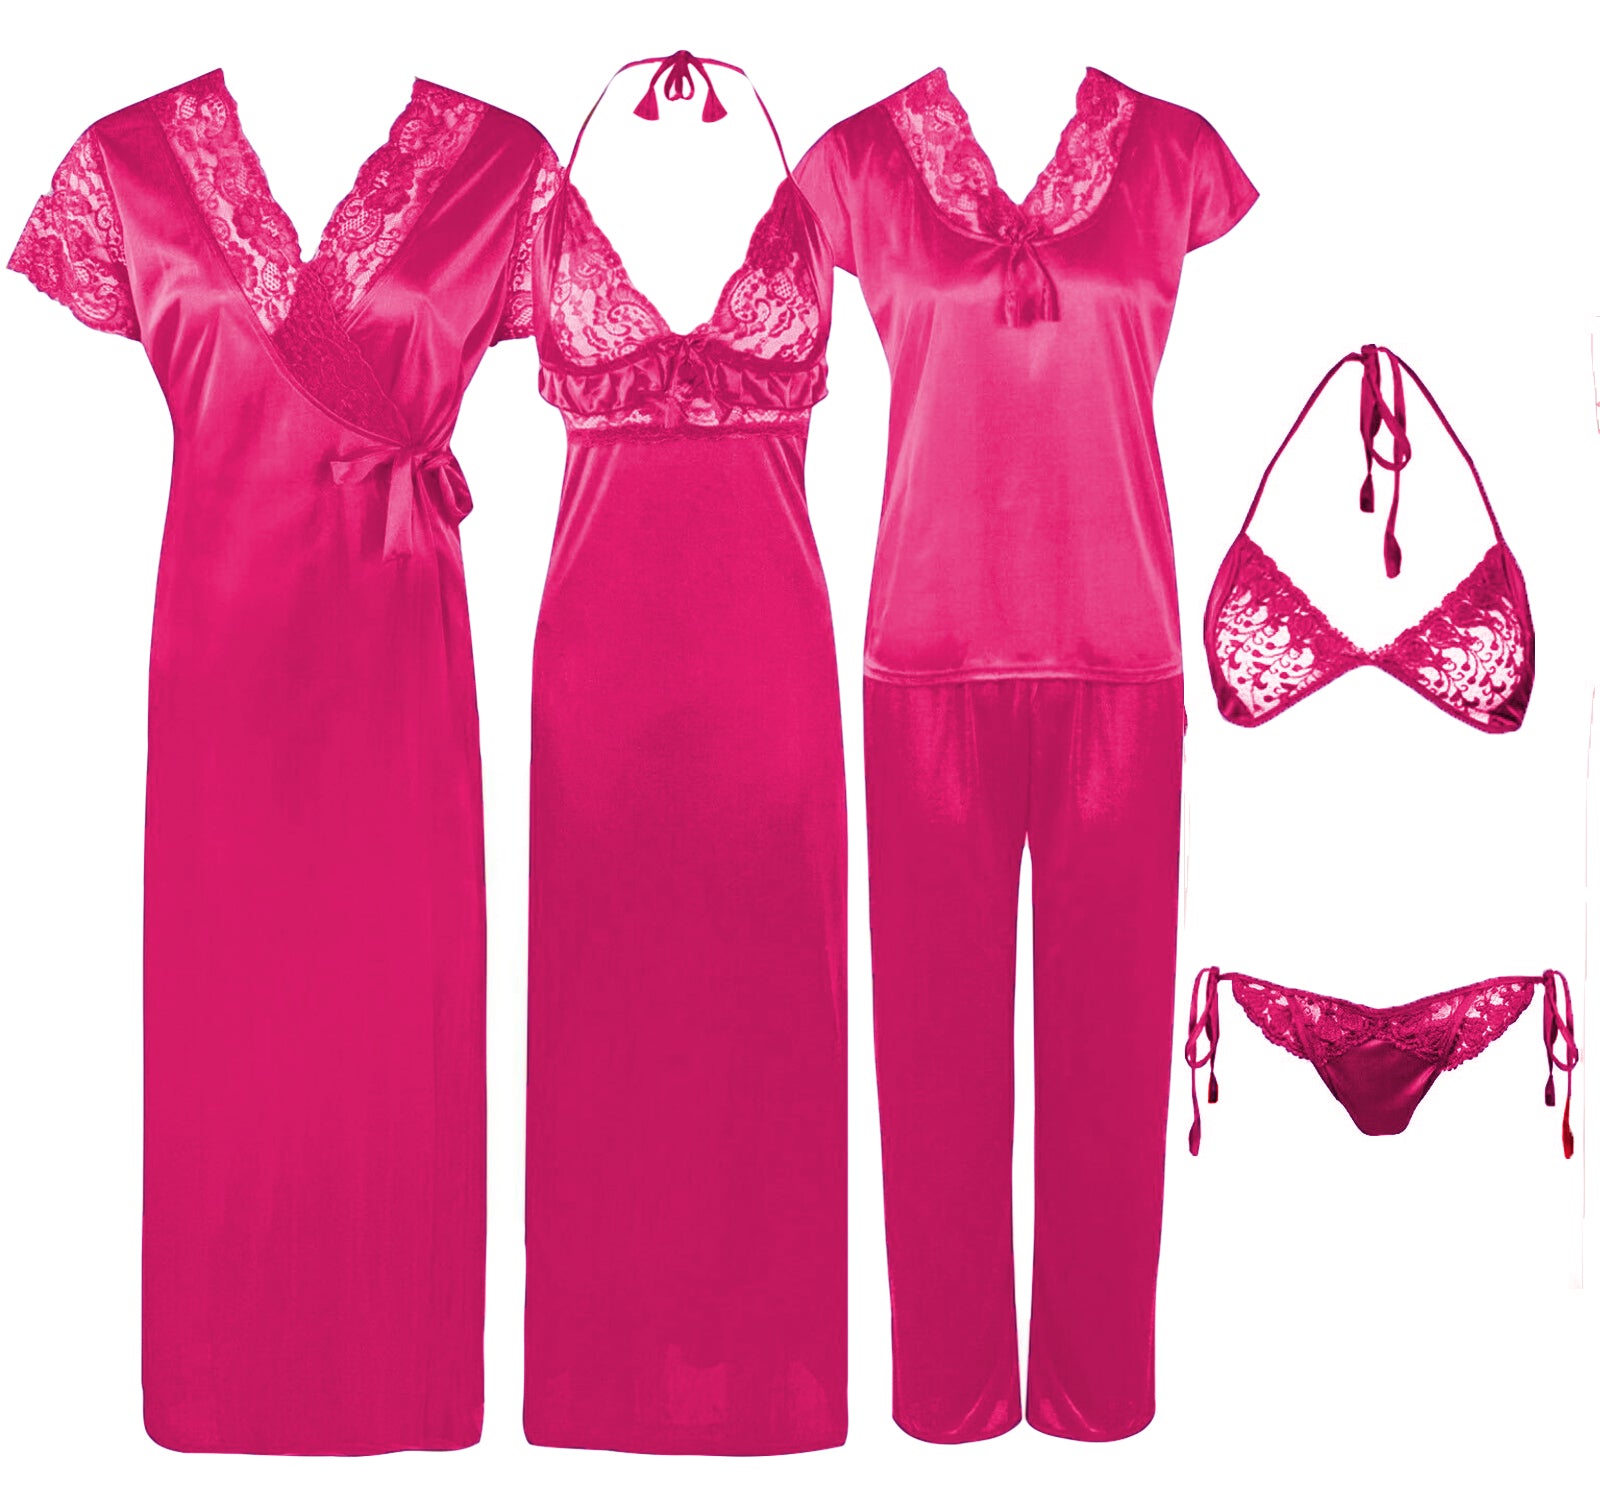 Rose Pink / One Size 6 Pcs Bridal Nightwear Set The Orange Tags